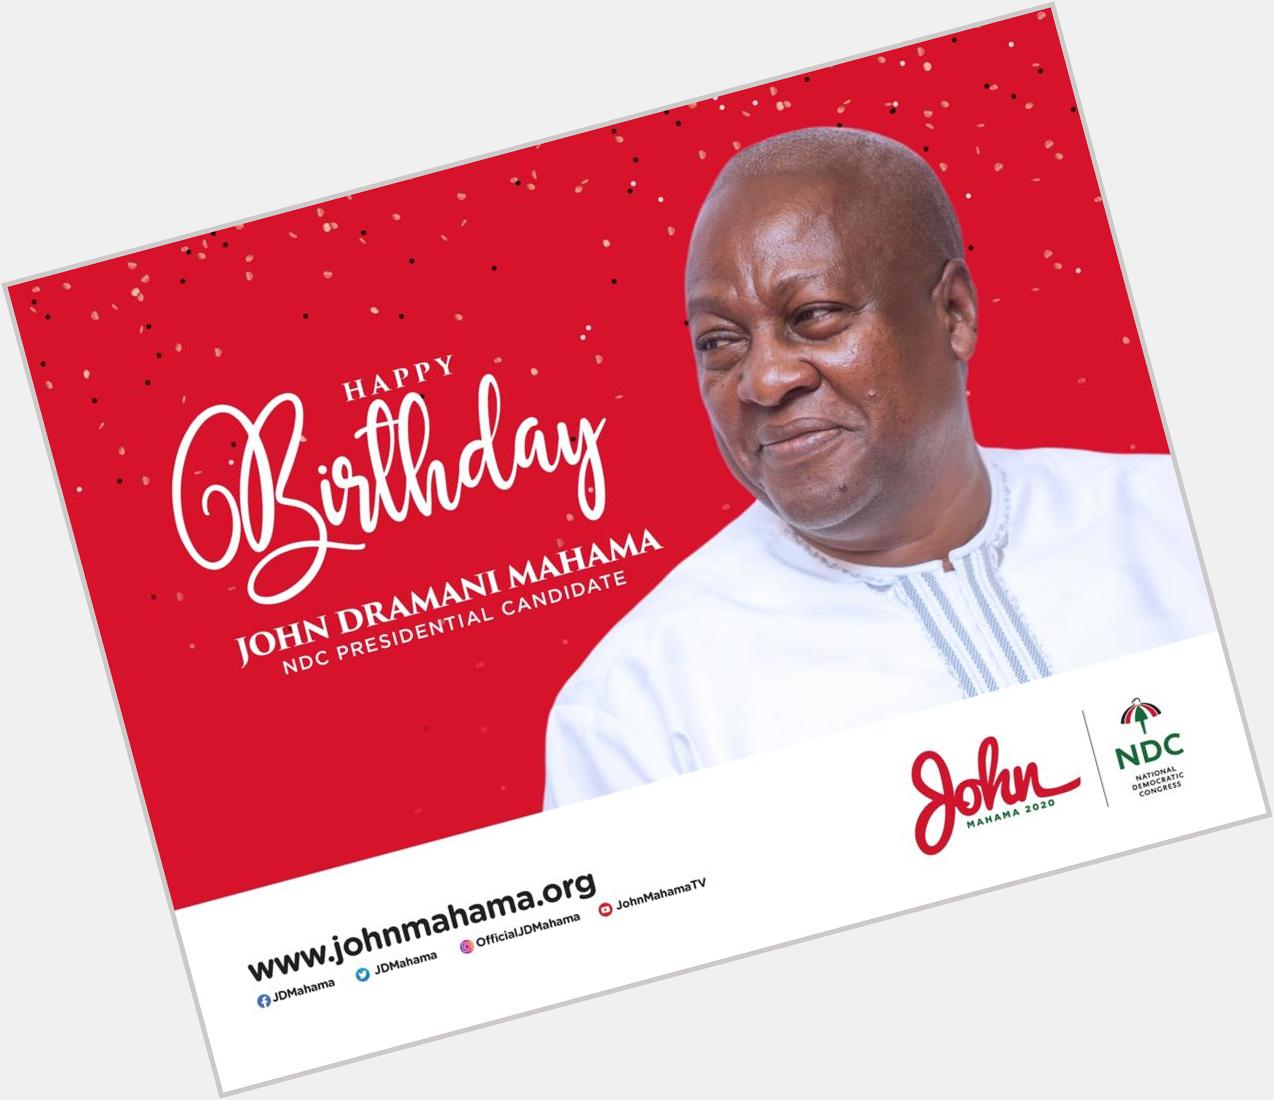 Happy birthday John Dramani Mahama. Stay blessed 